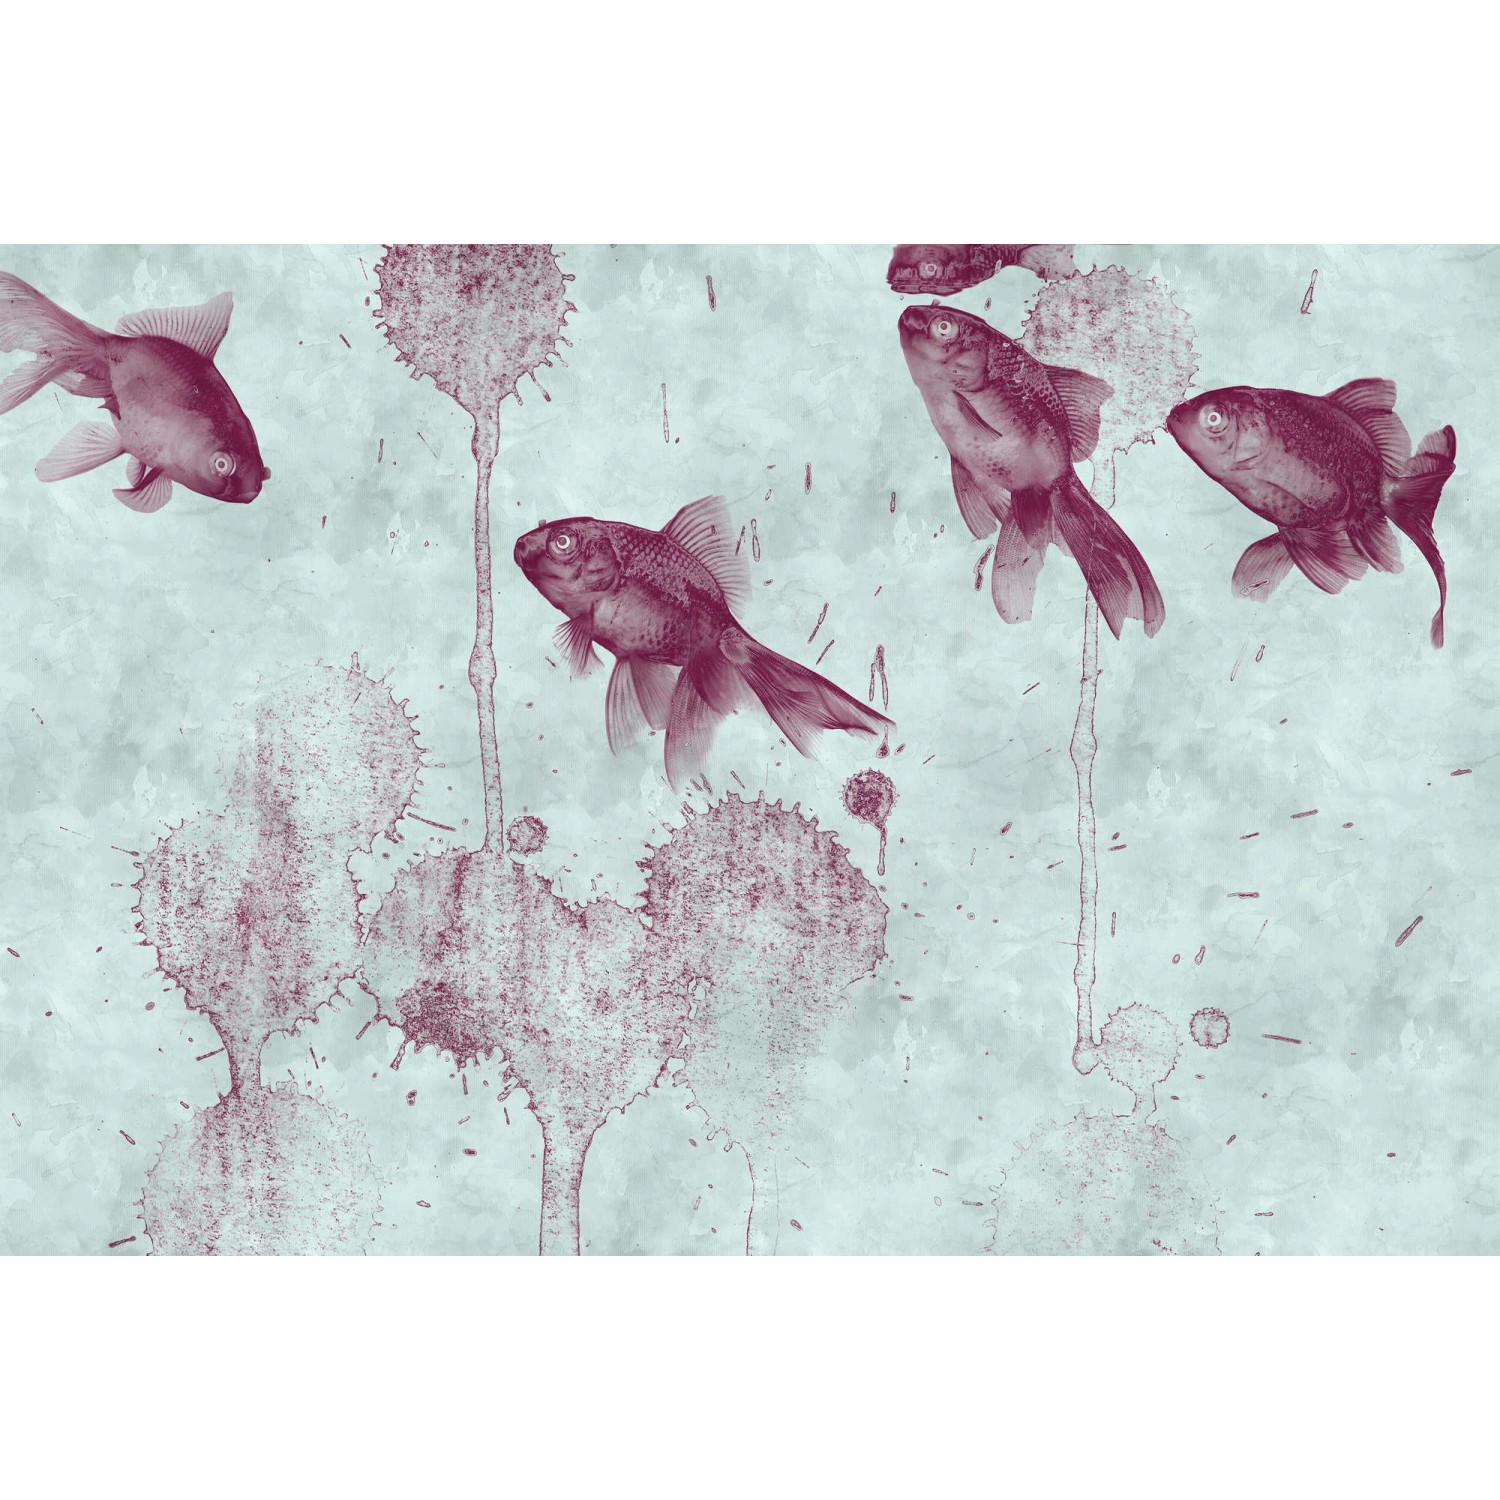 Fototapete Fische Teich Grau Rot 4,00 m x 2,70 m FSC® von -